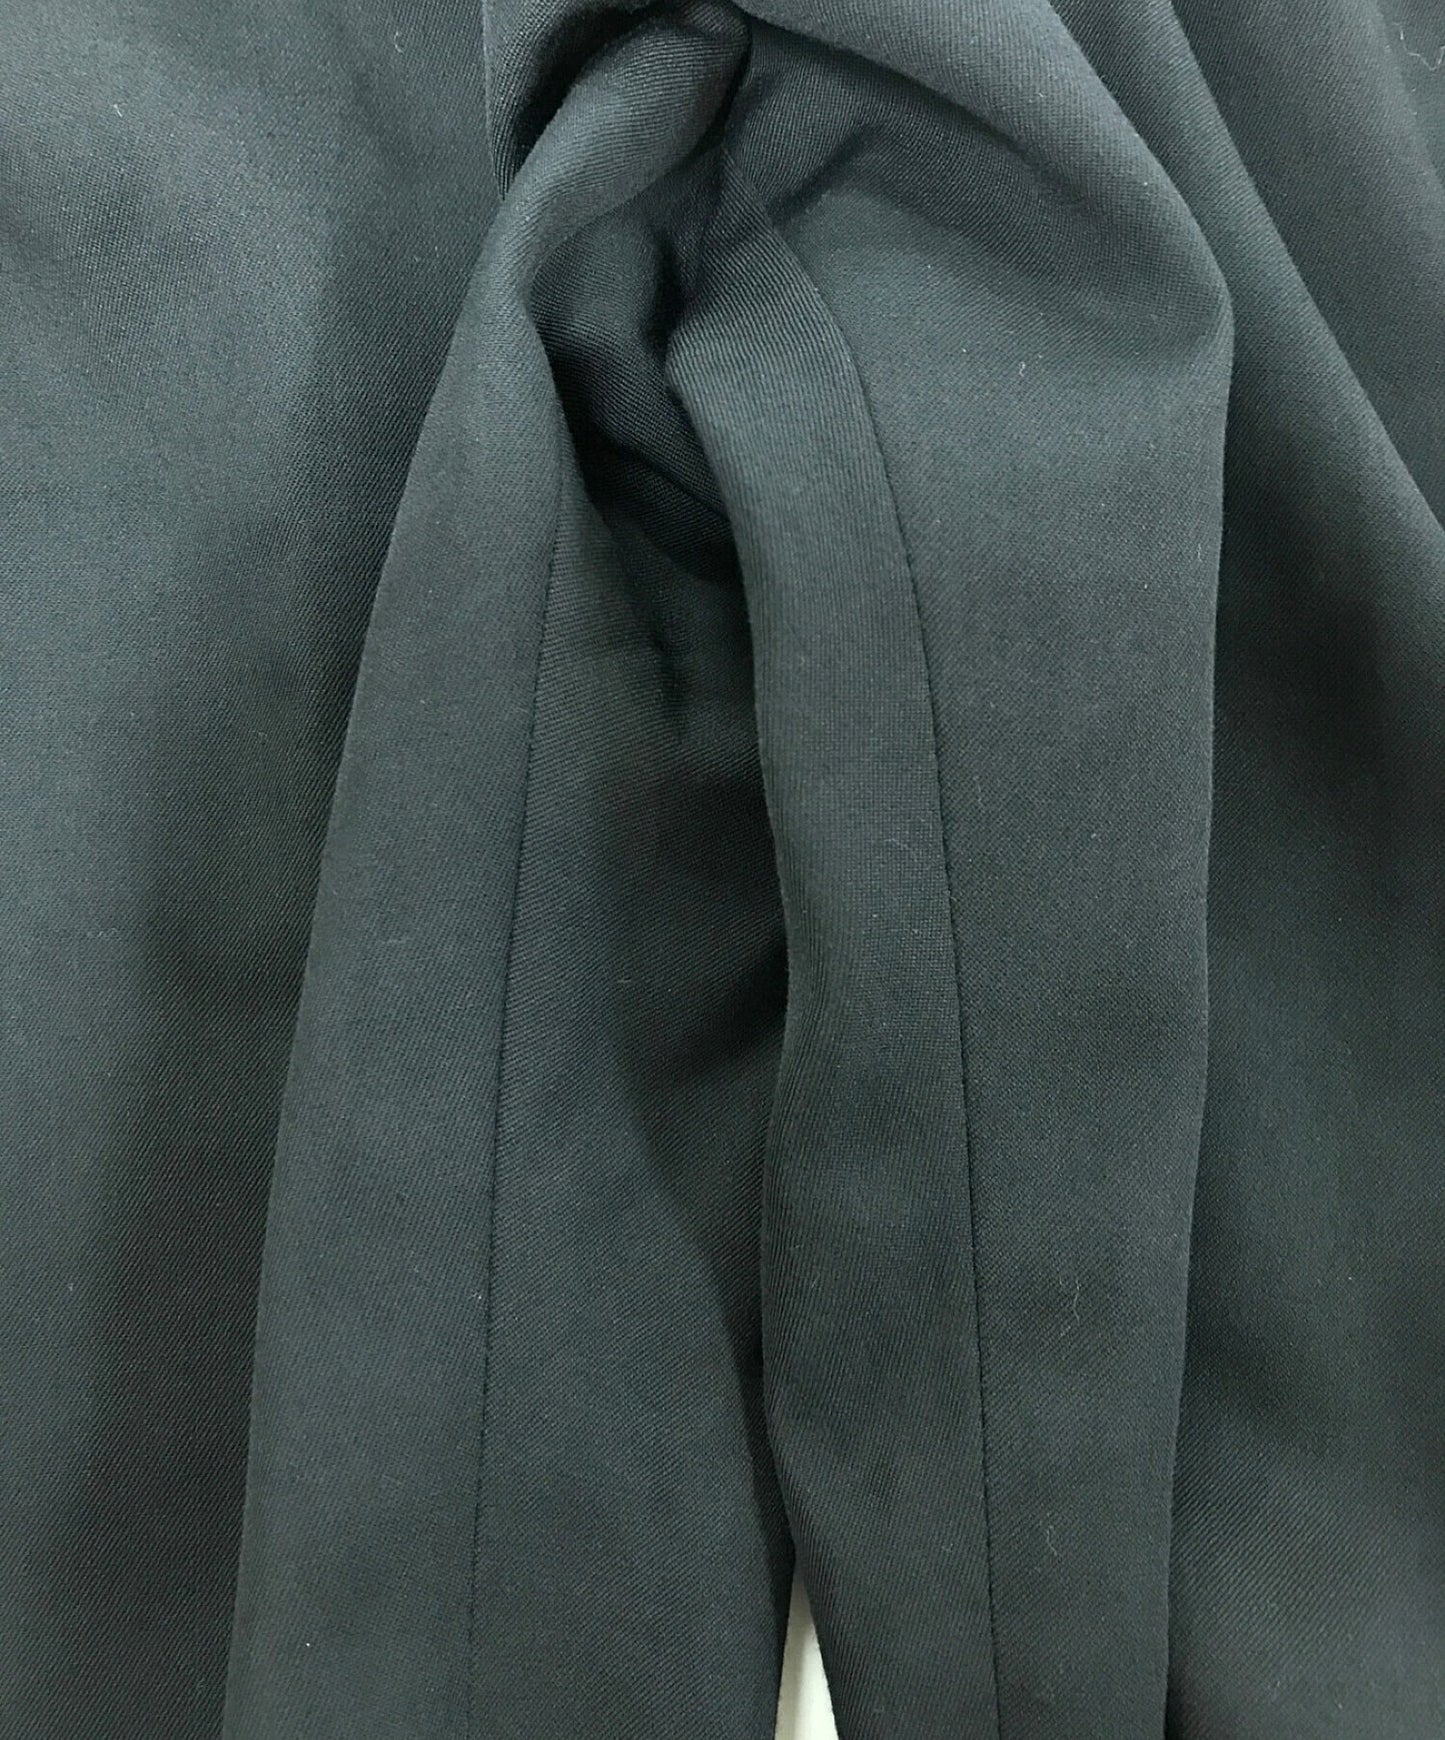 Yohji Yamamoto直裤HV-P08-114